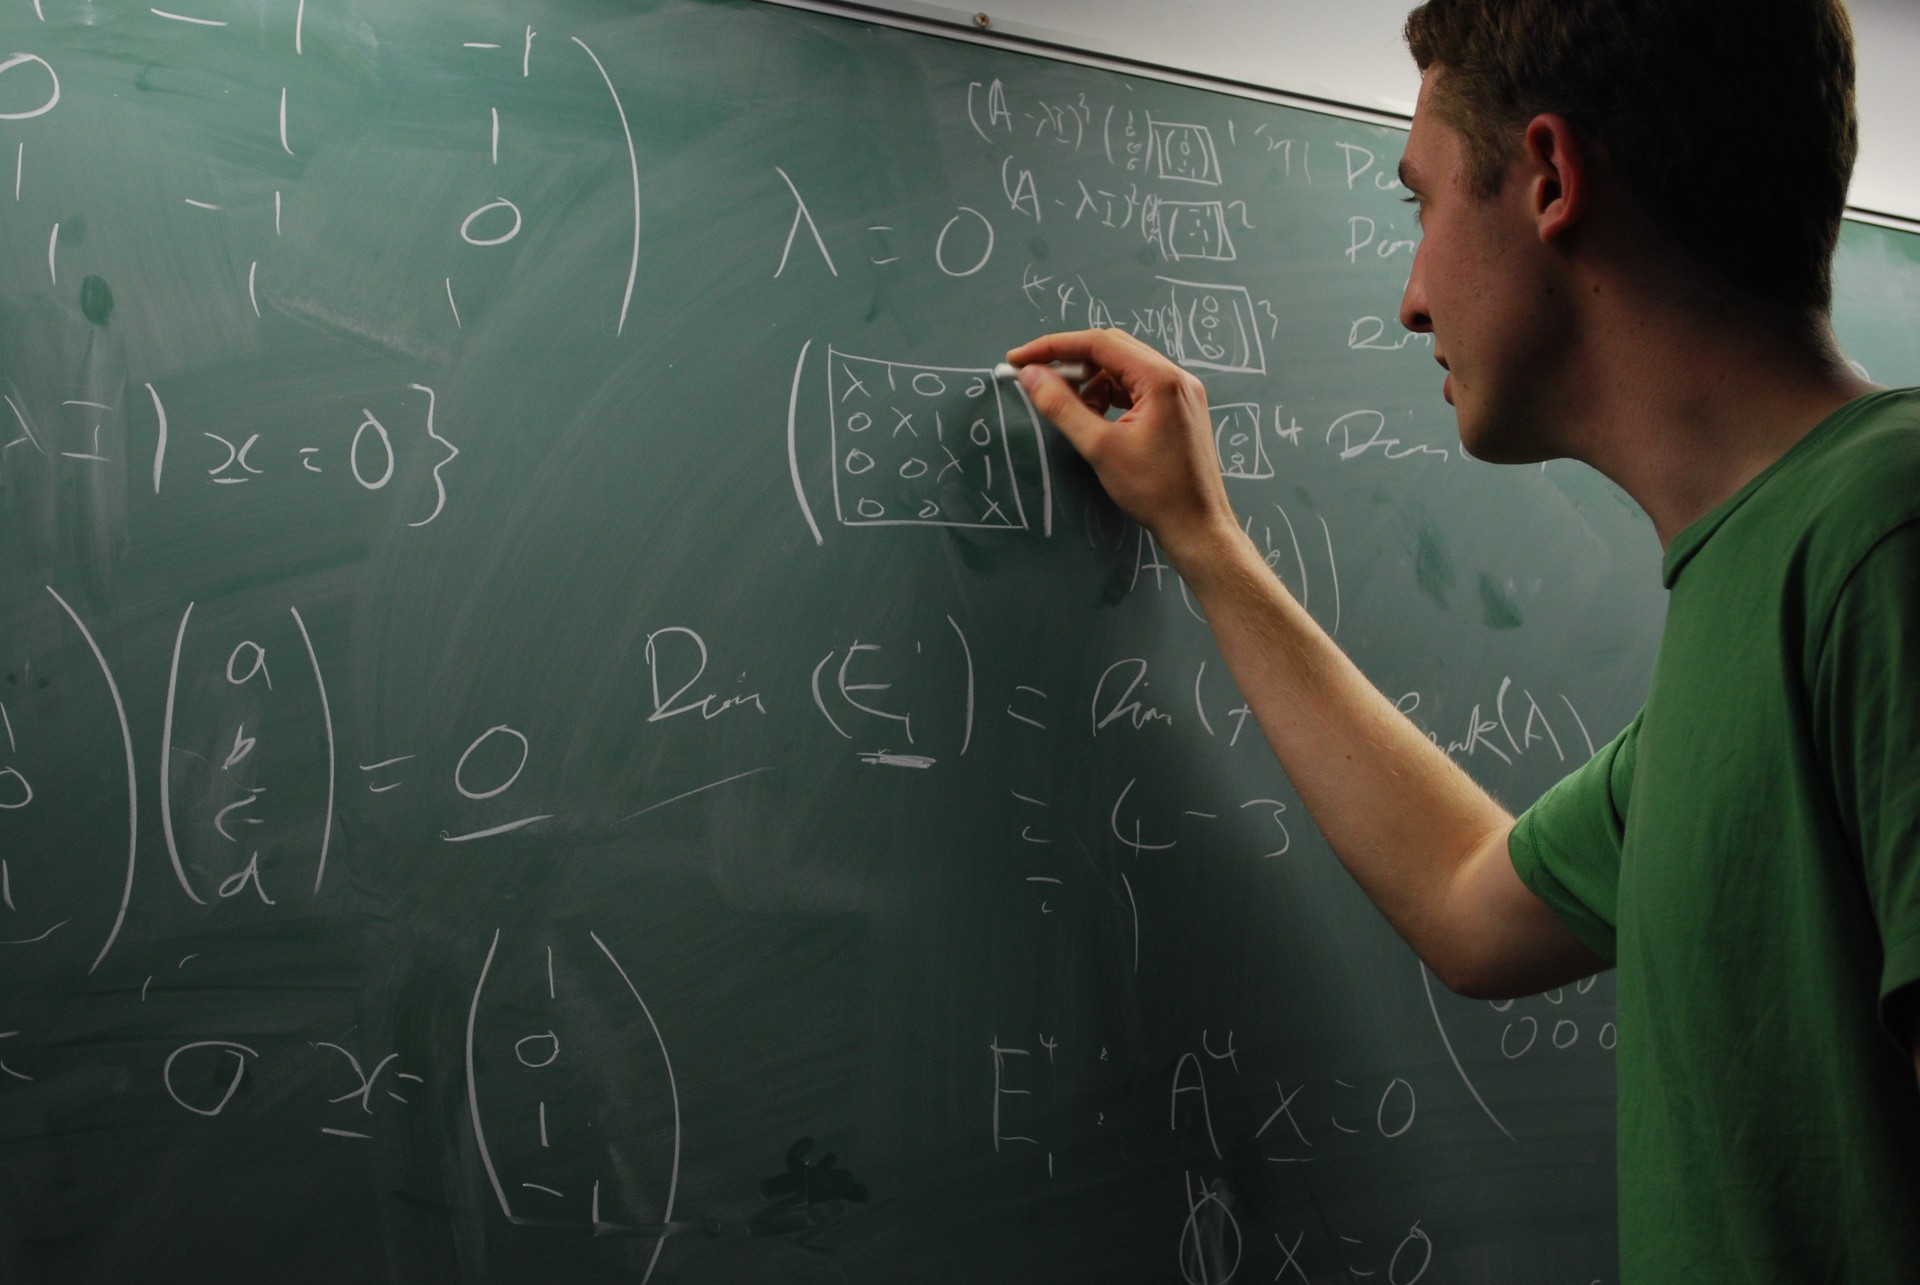 Matemáticos são disputados por bancos e consultorias financeiras (Foto: stuartpilbrow/flickr/creative commons)